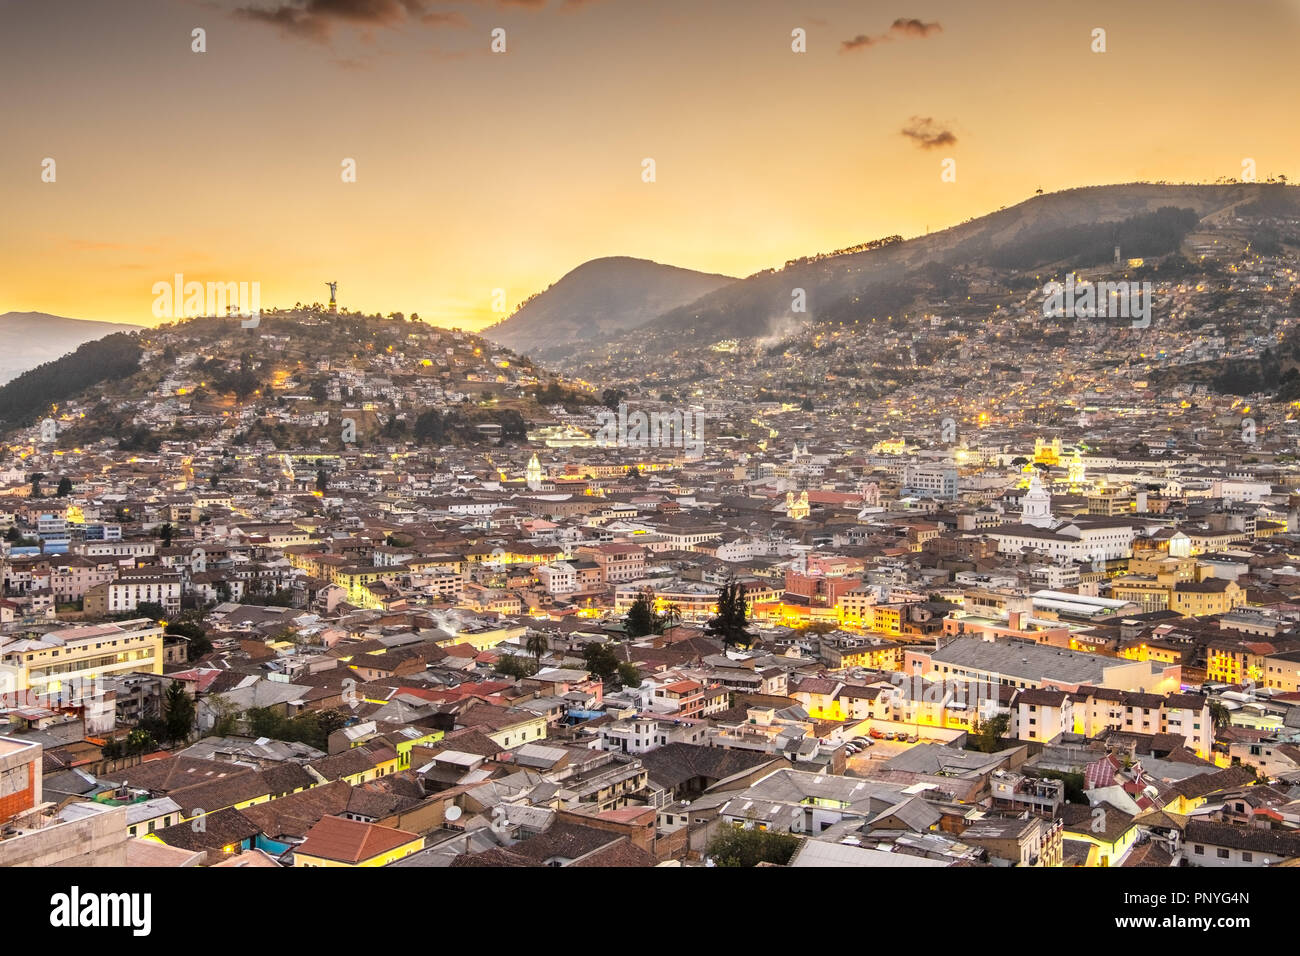 Quito, Ecuador, at night Stock Photo